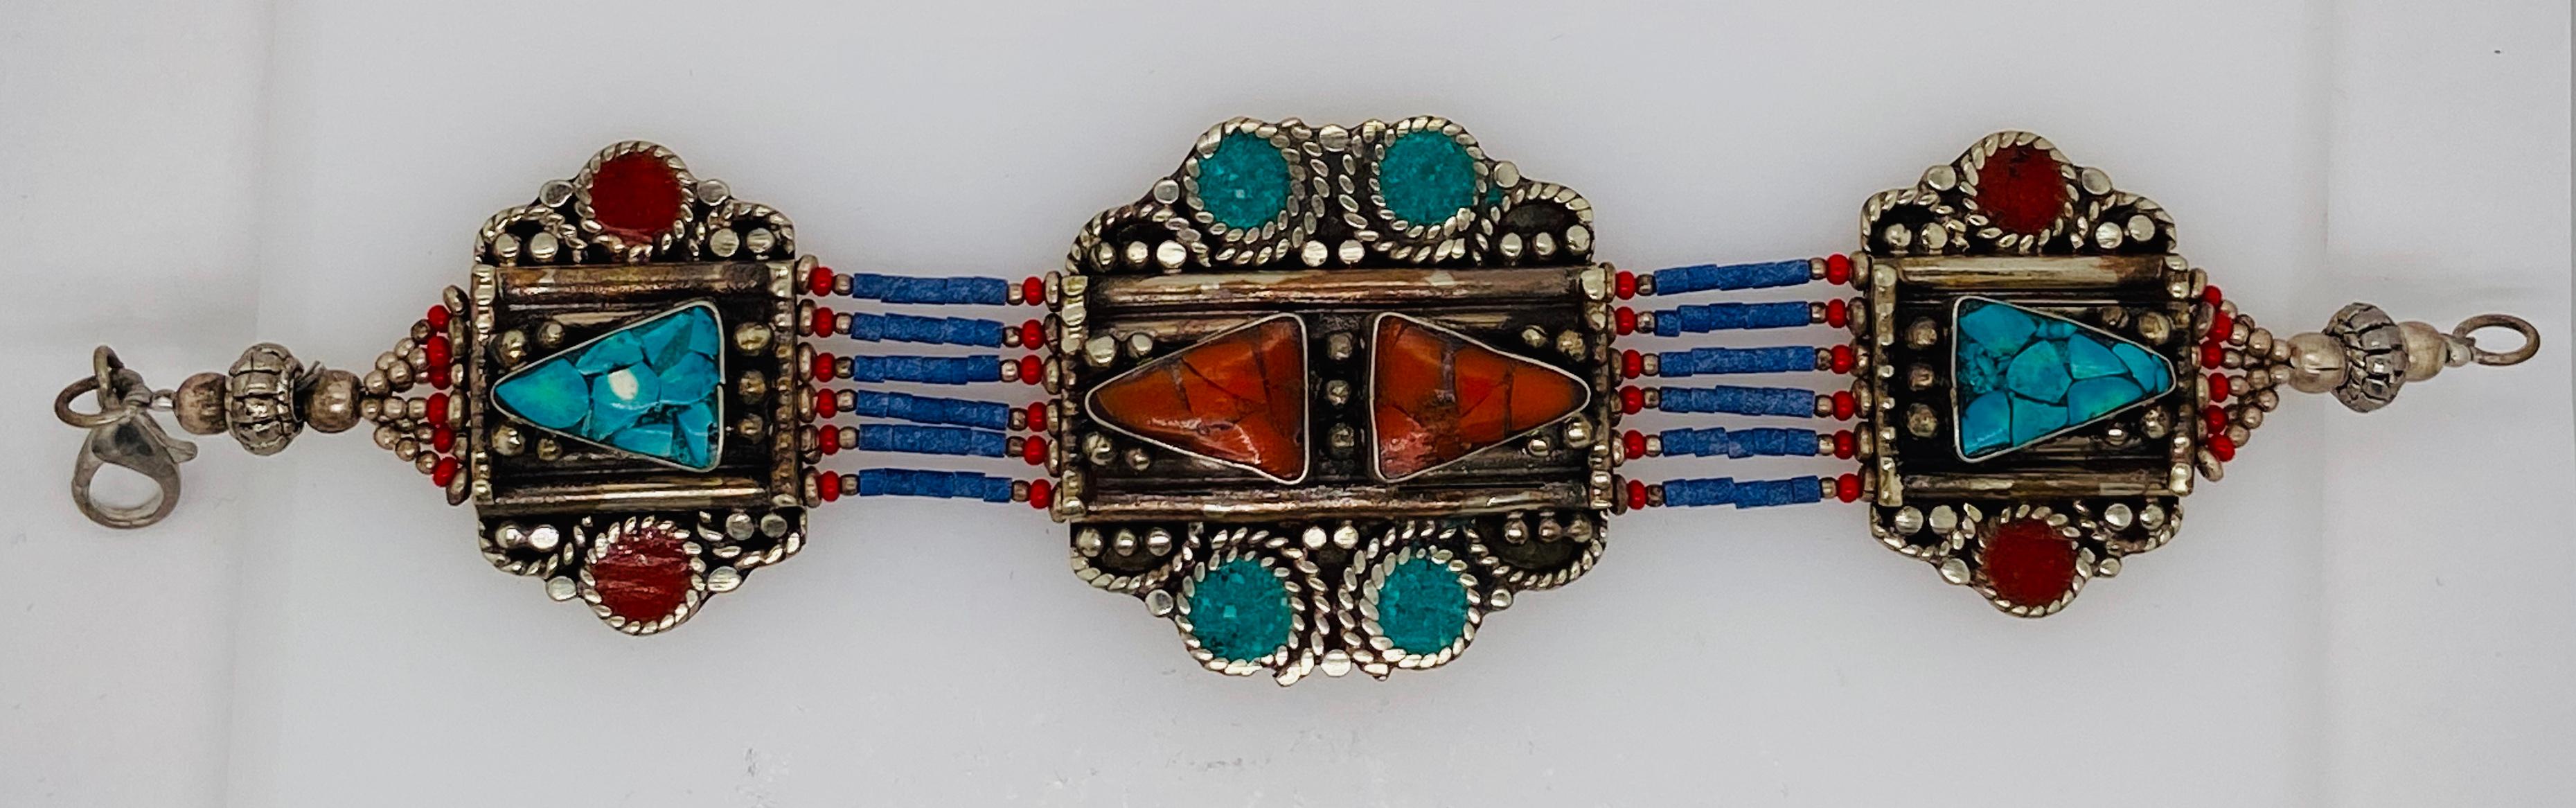 Un superbe objet tribal marocain fait à la main  Bracelet tribal berbère en argent pur. Cette magnifique pièce unique en son genre  bijou fabriqué vers les années 1920 par les tribus berbères  au Maroc présente des turquoises authentiques et